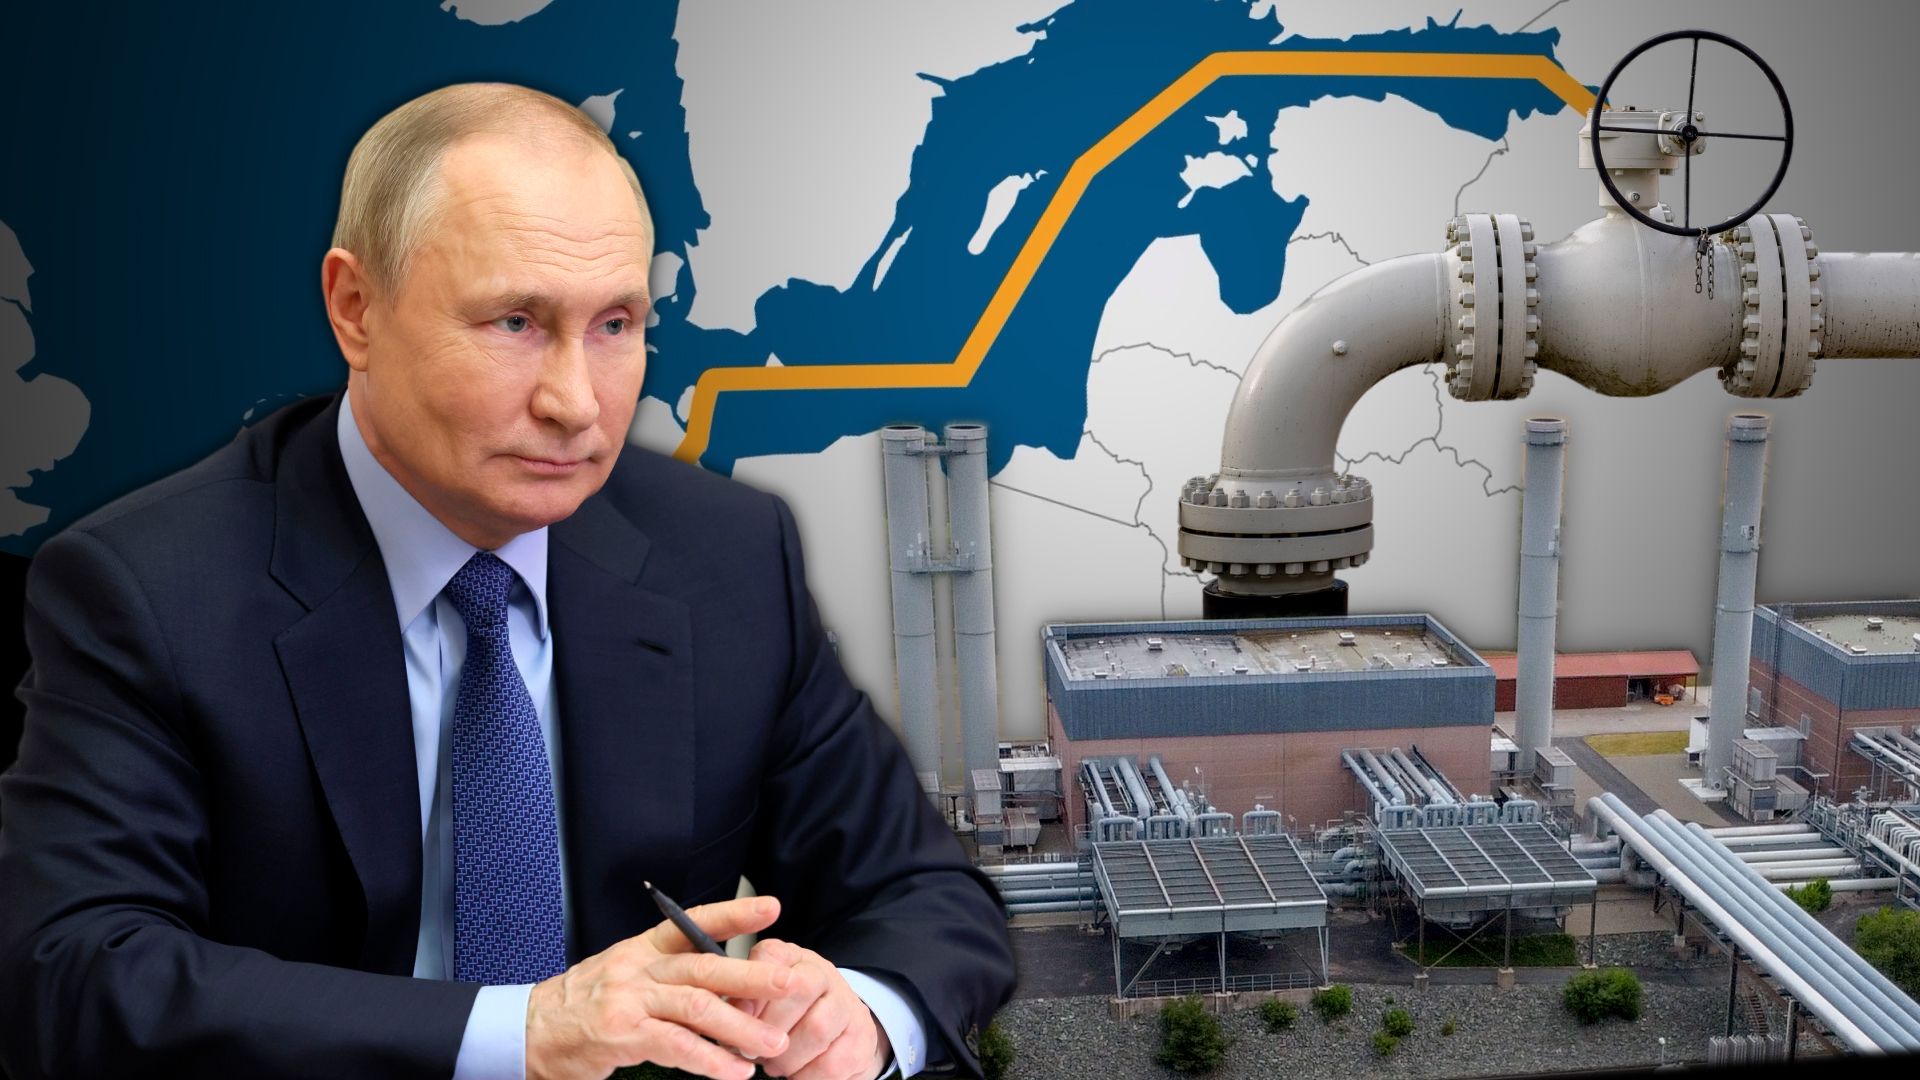 Putin đã một tay xóa bỏ tương lai của nền kinh tế xuất khẩu nhiên liệu hóa thạch của Nga, và cùng với đó là sức mạnh của nhà tài phiệt vốn làm nền tảng cho sự cai trị của ông. Ảnh: @AFP.